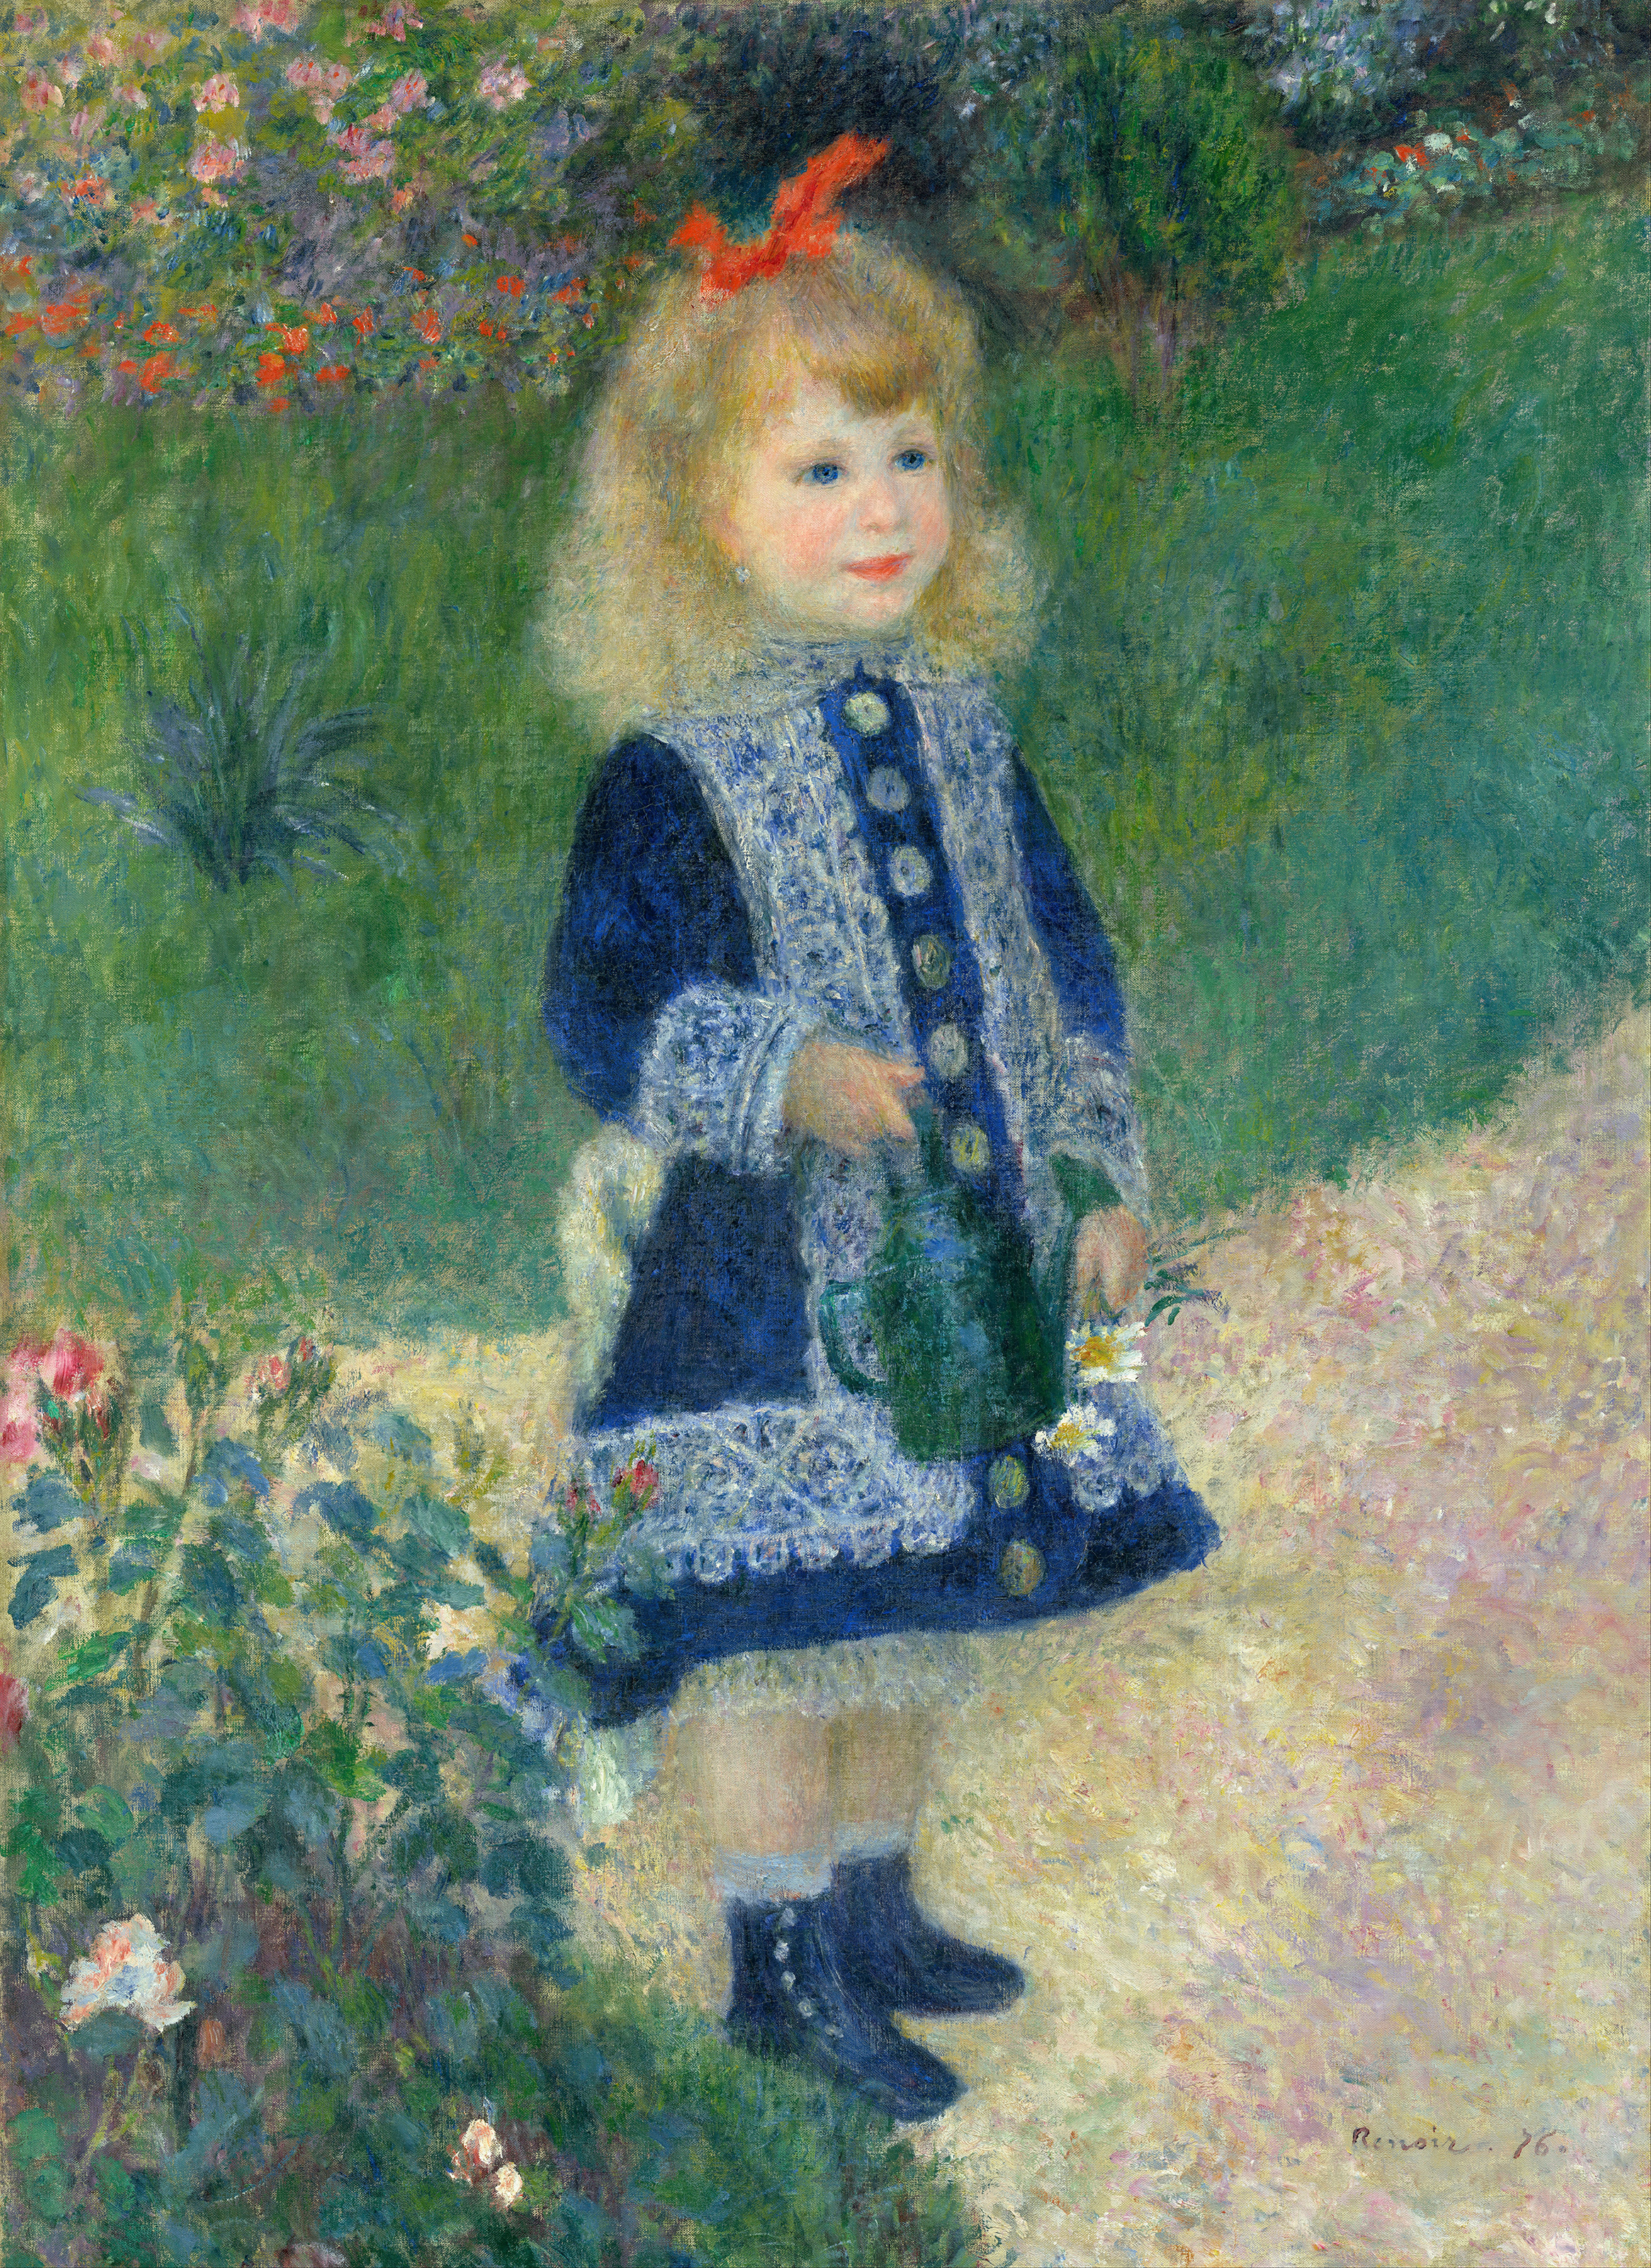 Ein Mädchen mit einer Gießkanne by Pierre-Auguste Renoir - 1876 - 73 x 100 cm National Gallery of Art